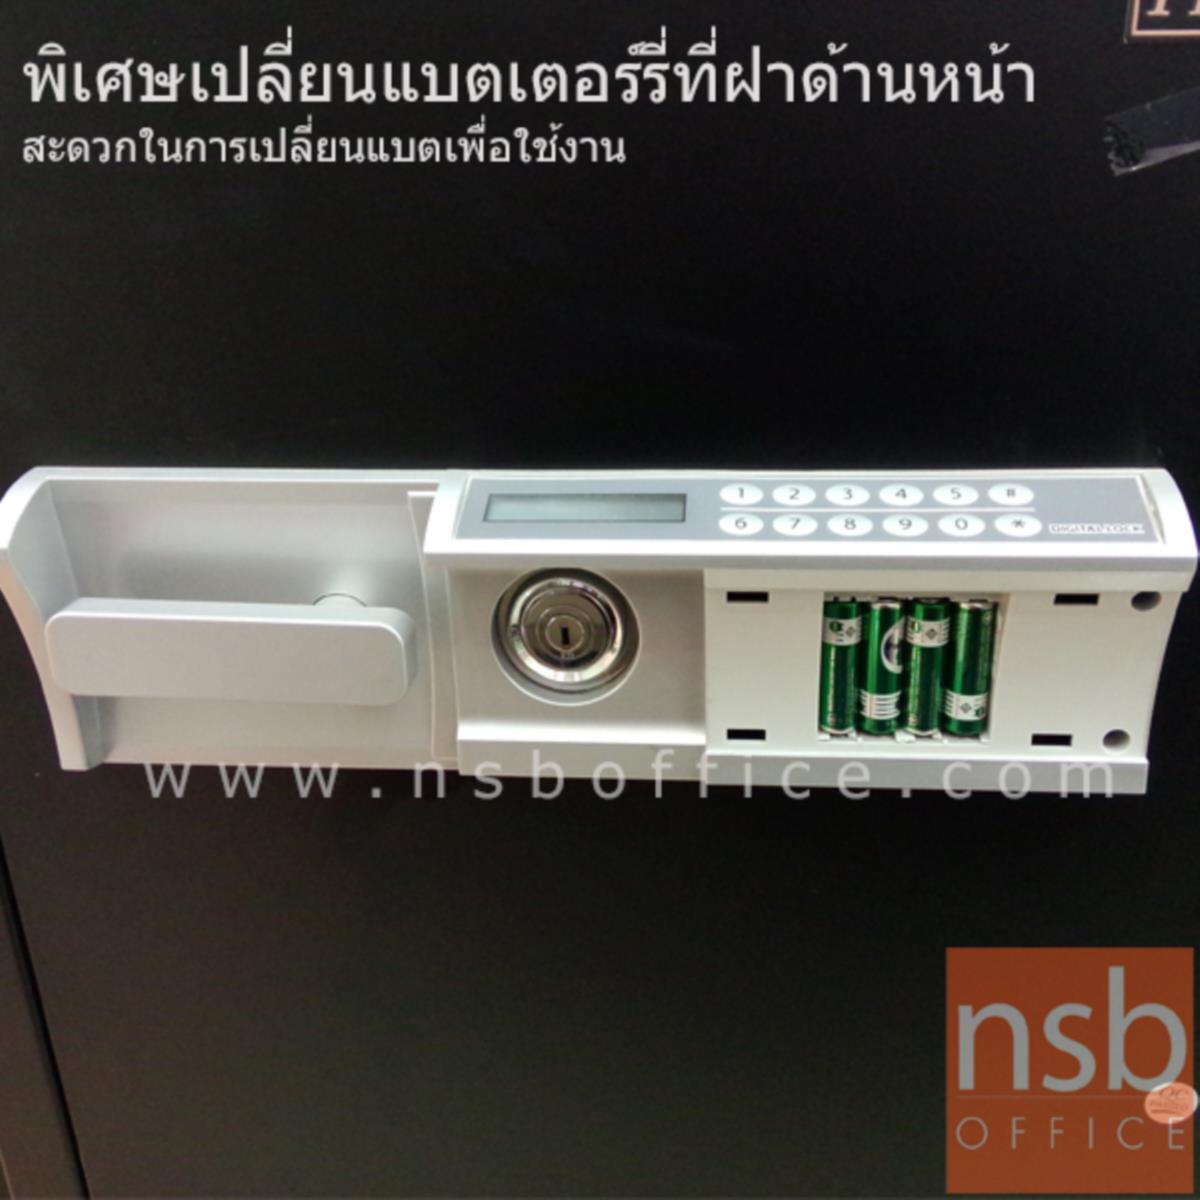 ตู้เซฟดิจิตอล 105 กก. รุ่น PRESIDENT-SMD2  มี 1 กุญแจ 1 รหัส  (รหัสใช้กดหน้าตู้ )